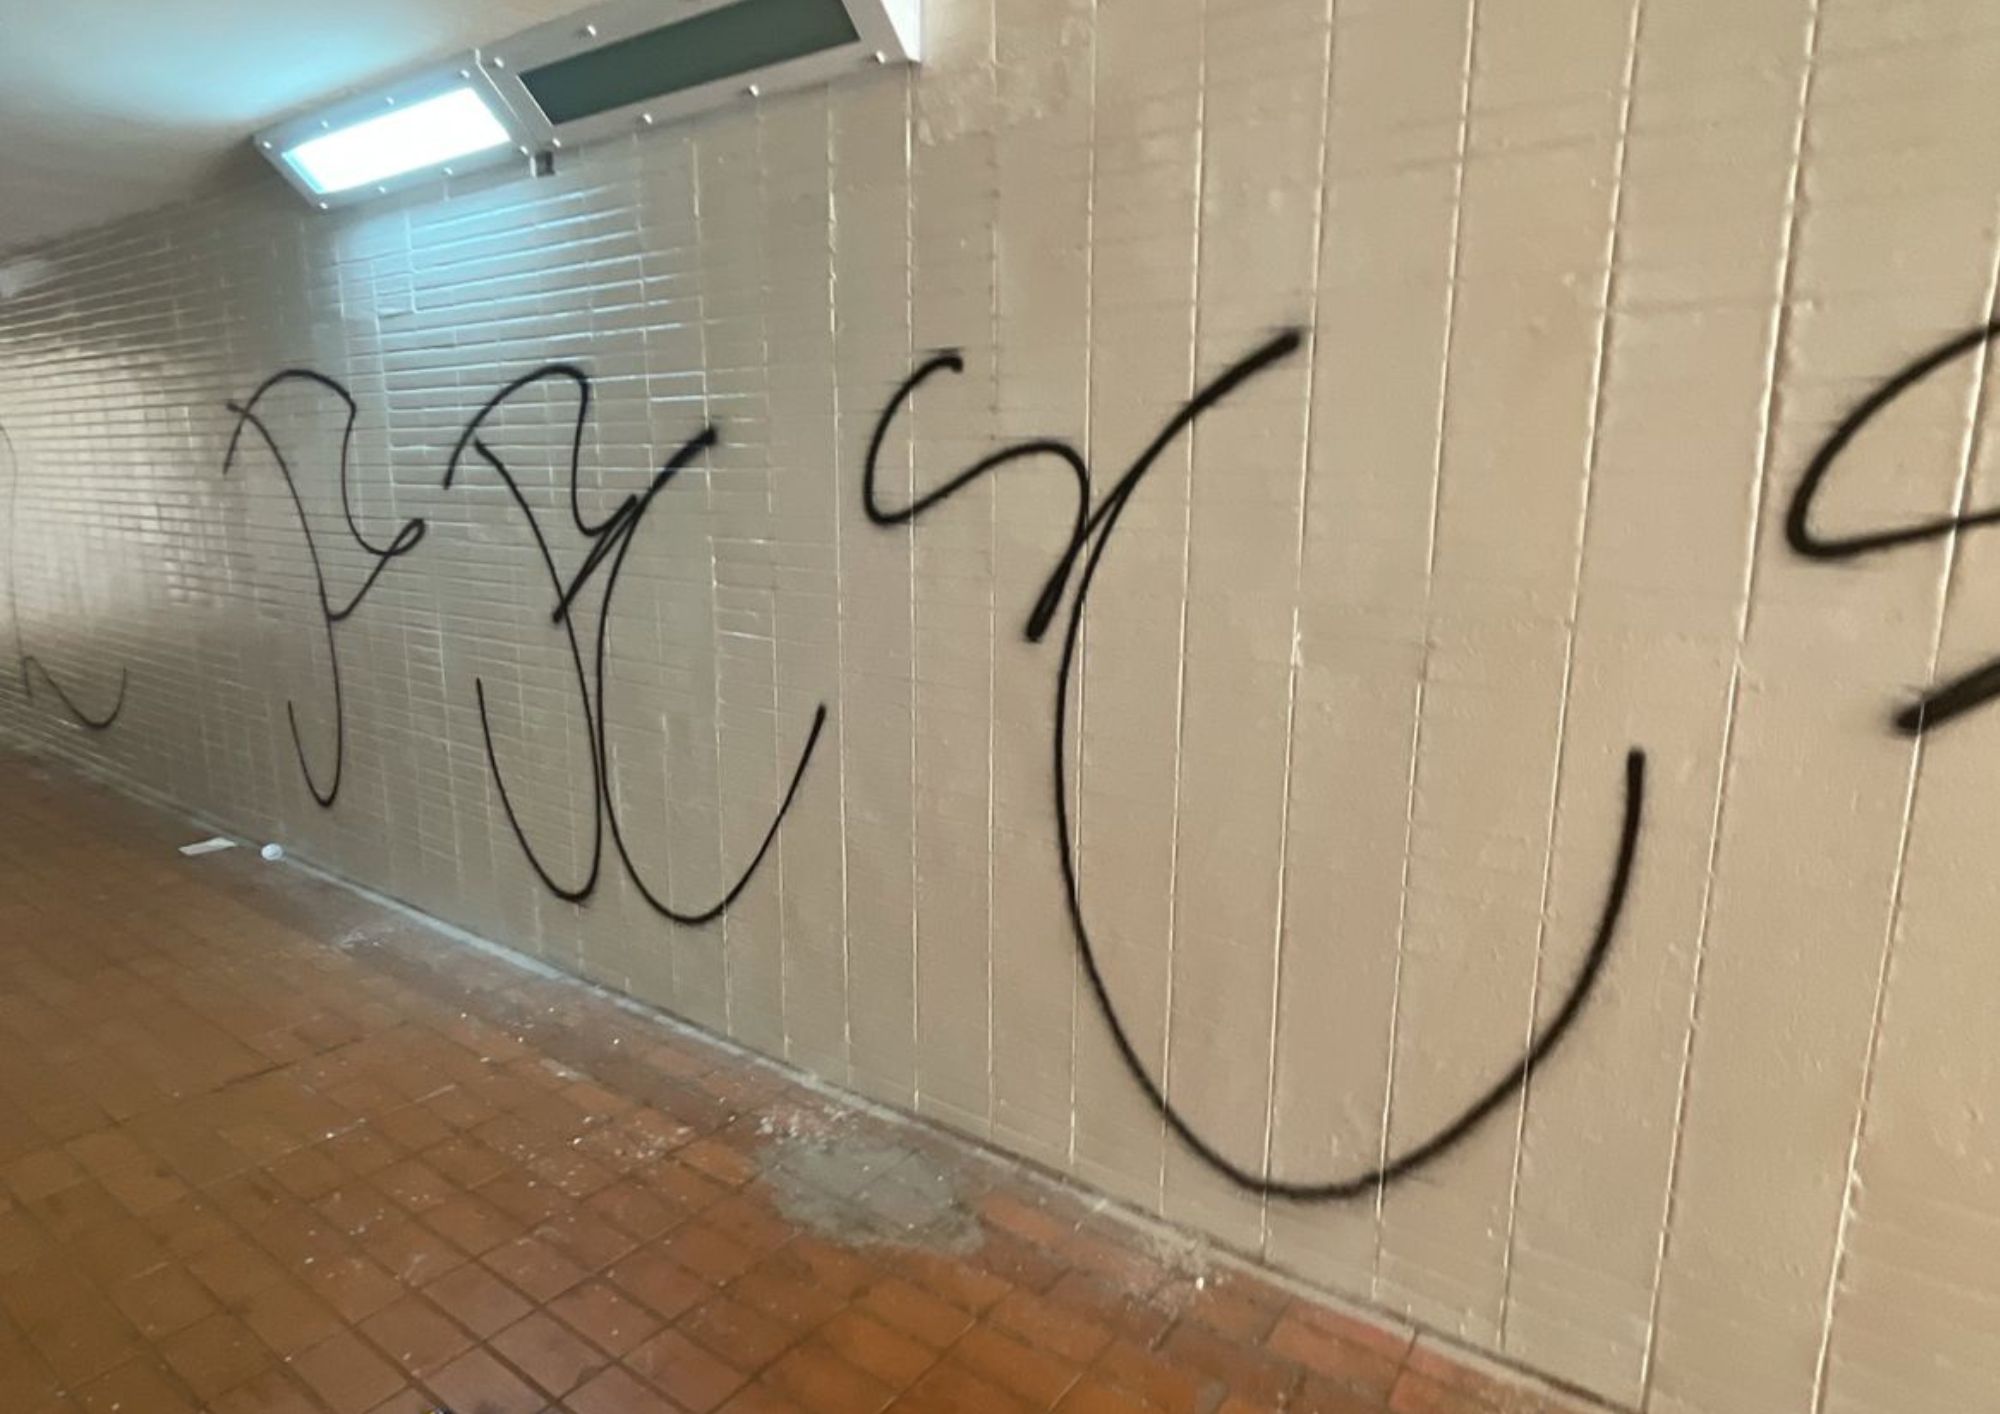 Passagens subterrâneas da Asa Sul sofrem com vandalismo